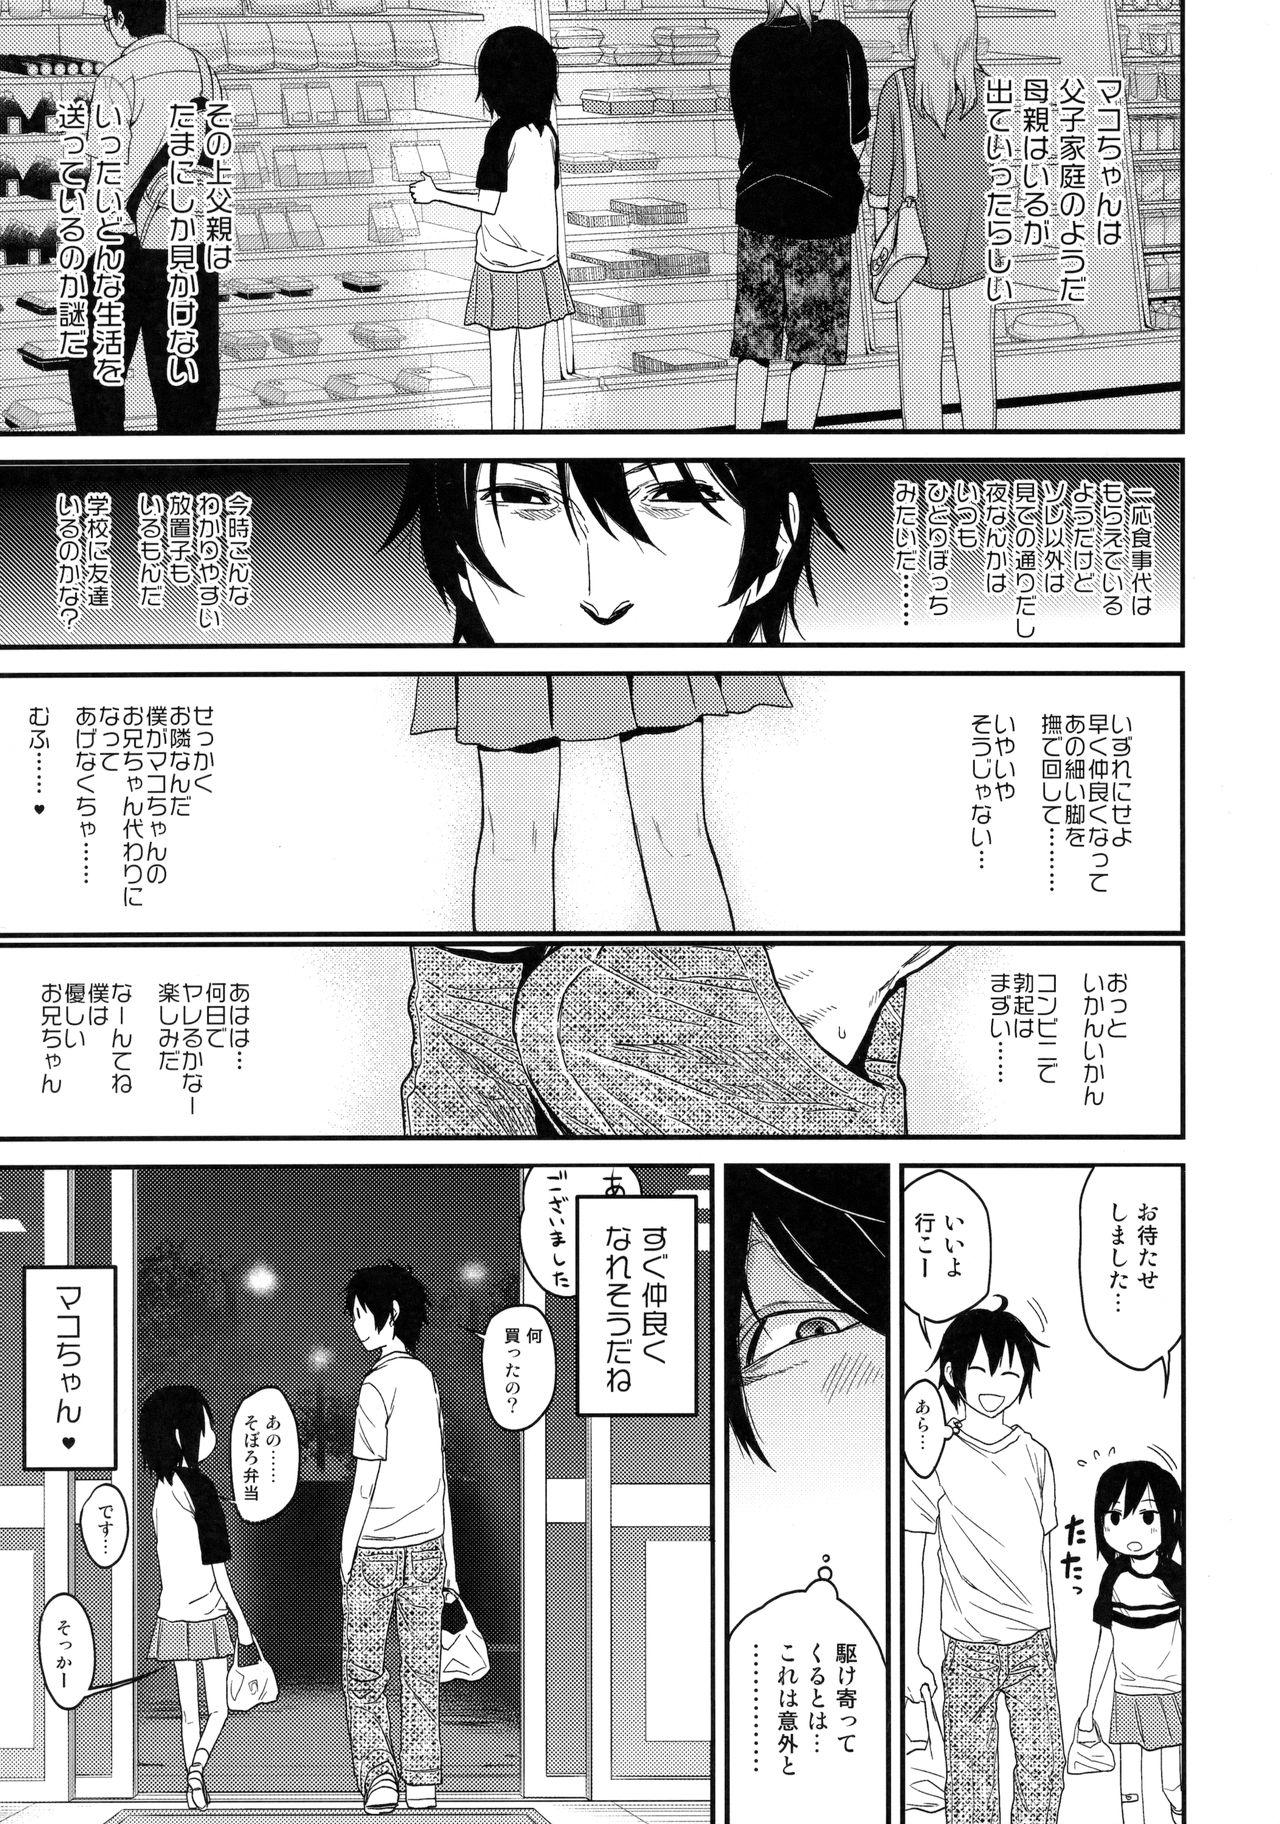 Short Tonari no Mako-chan Vol. 1 Stockings - Page 10